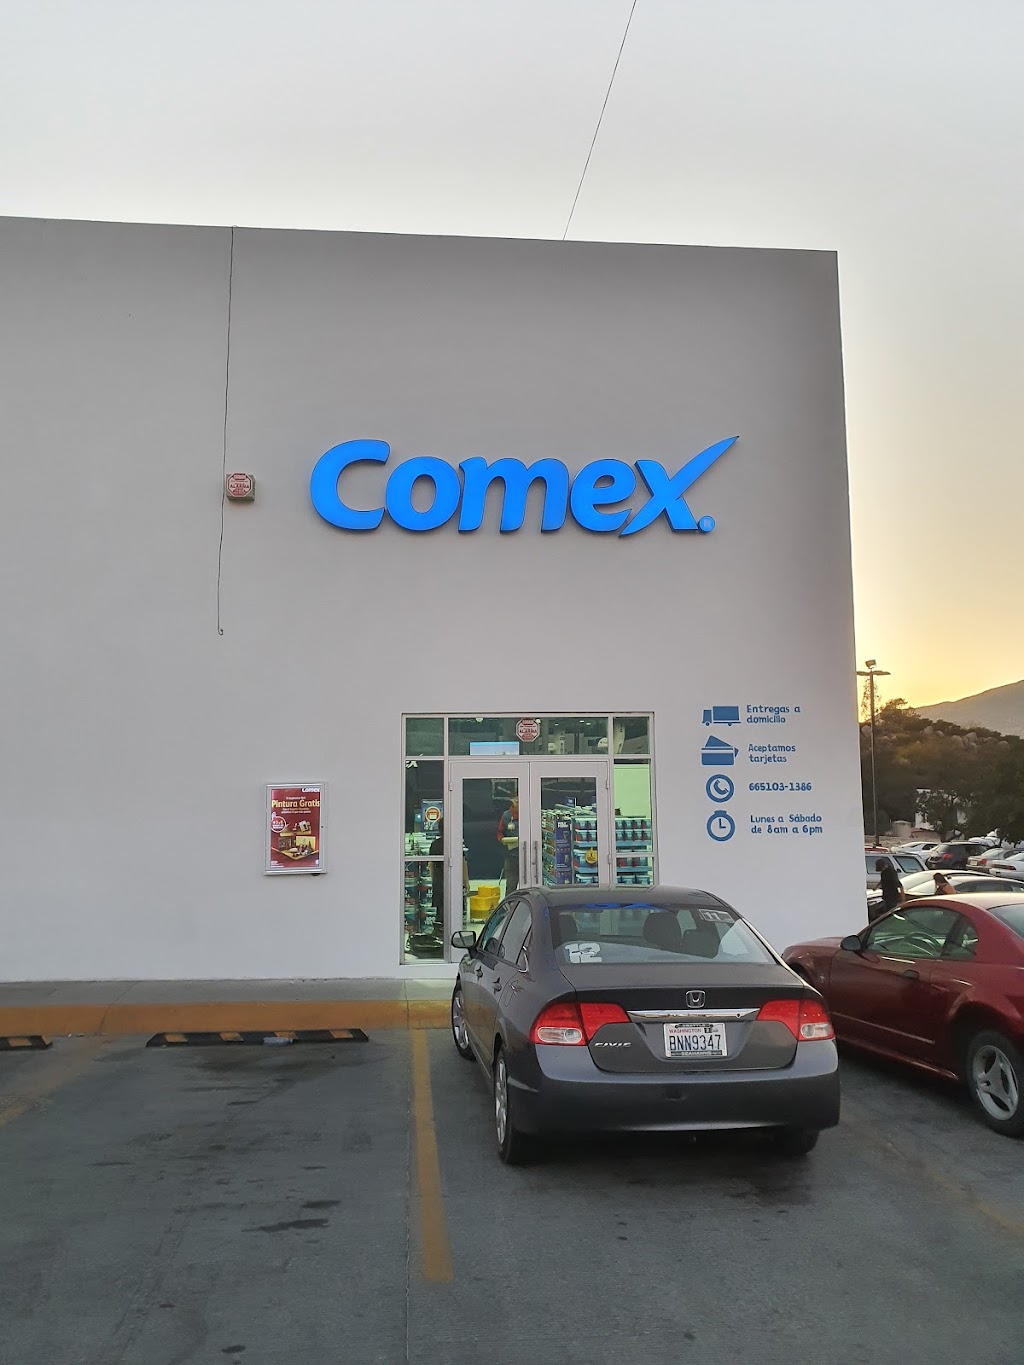 Comex Los Olivos | Blvrd Universidad 801-Local 7, Centro Urbano, 22401 Tecate, B.C., Mexico | Phone: 665 103 1386